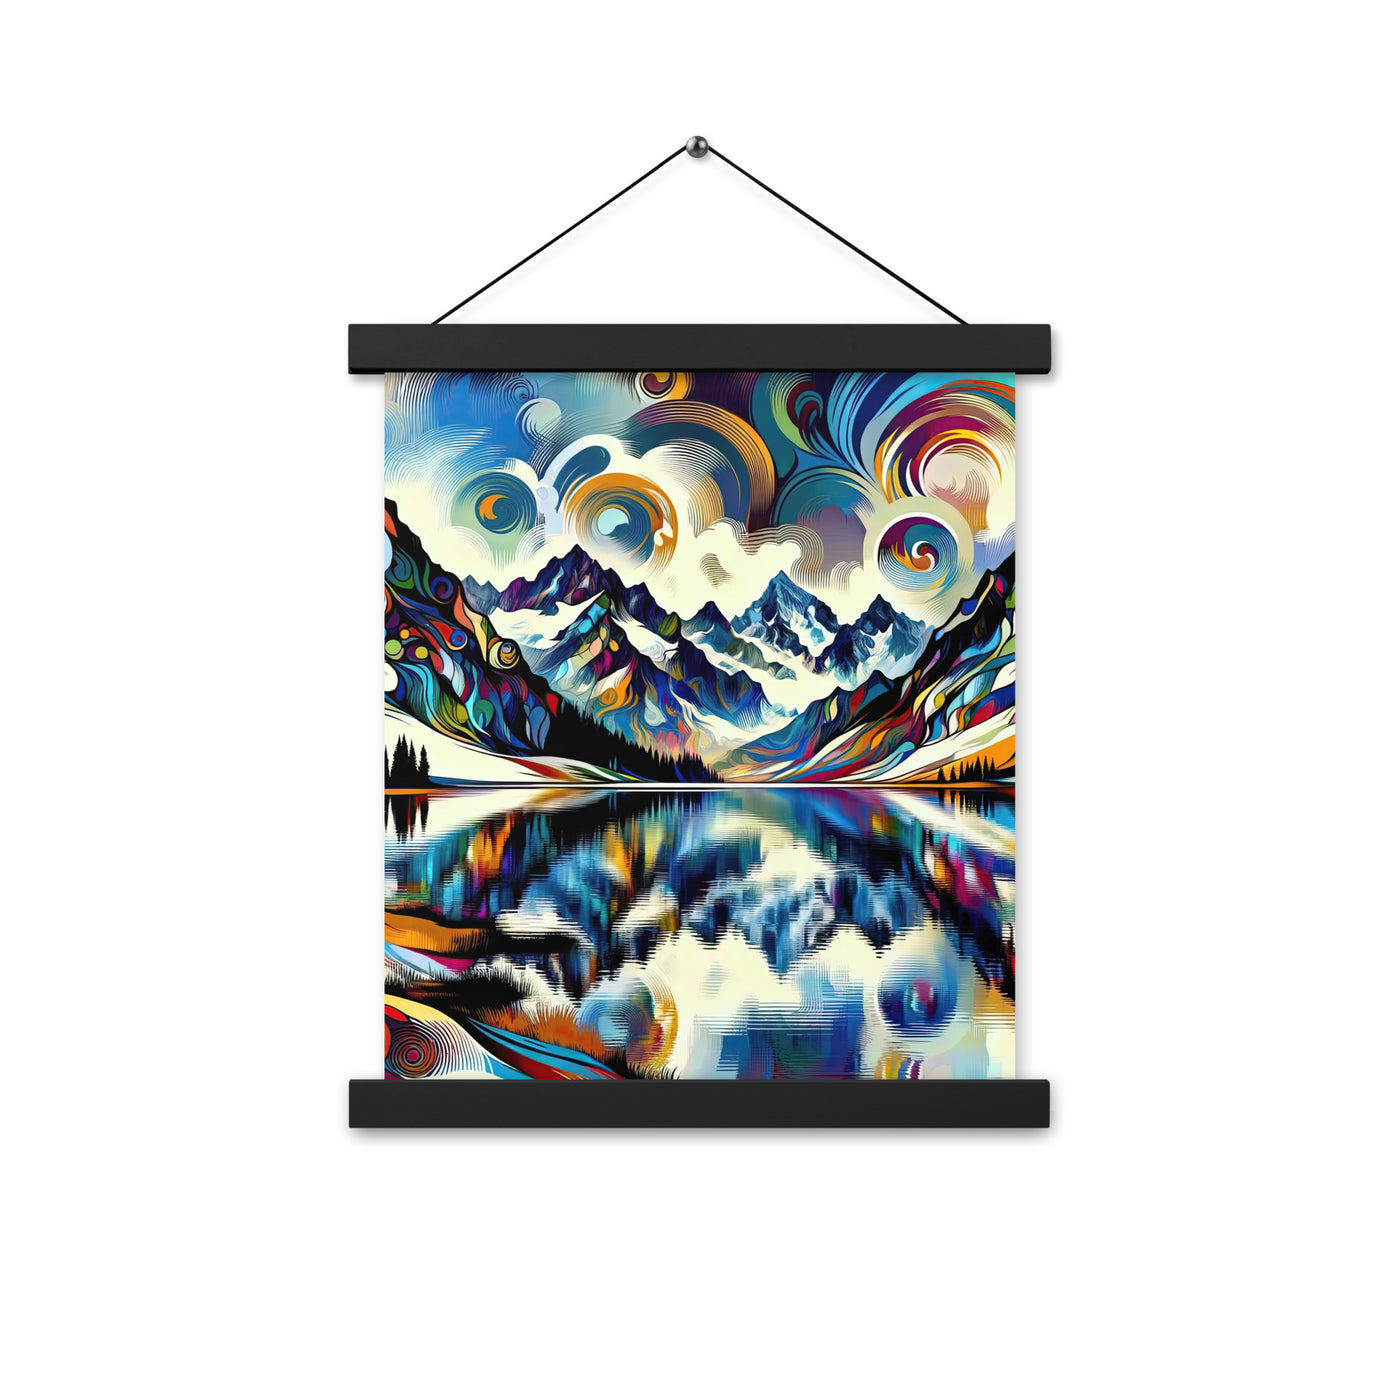 Alpensee im Zentrum eines abstrakt-expressionistischen Alpen-Kunstwerks - Premium Poster mit Aufhängung berge xxx yyy zzz 27.9 x 35.6 cm